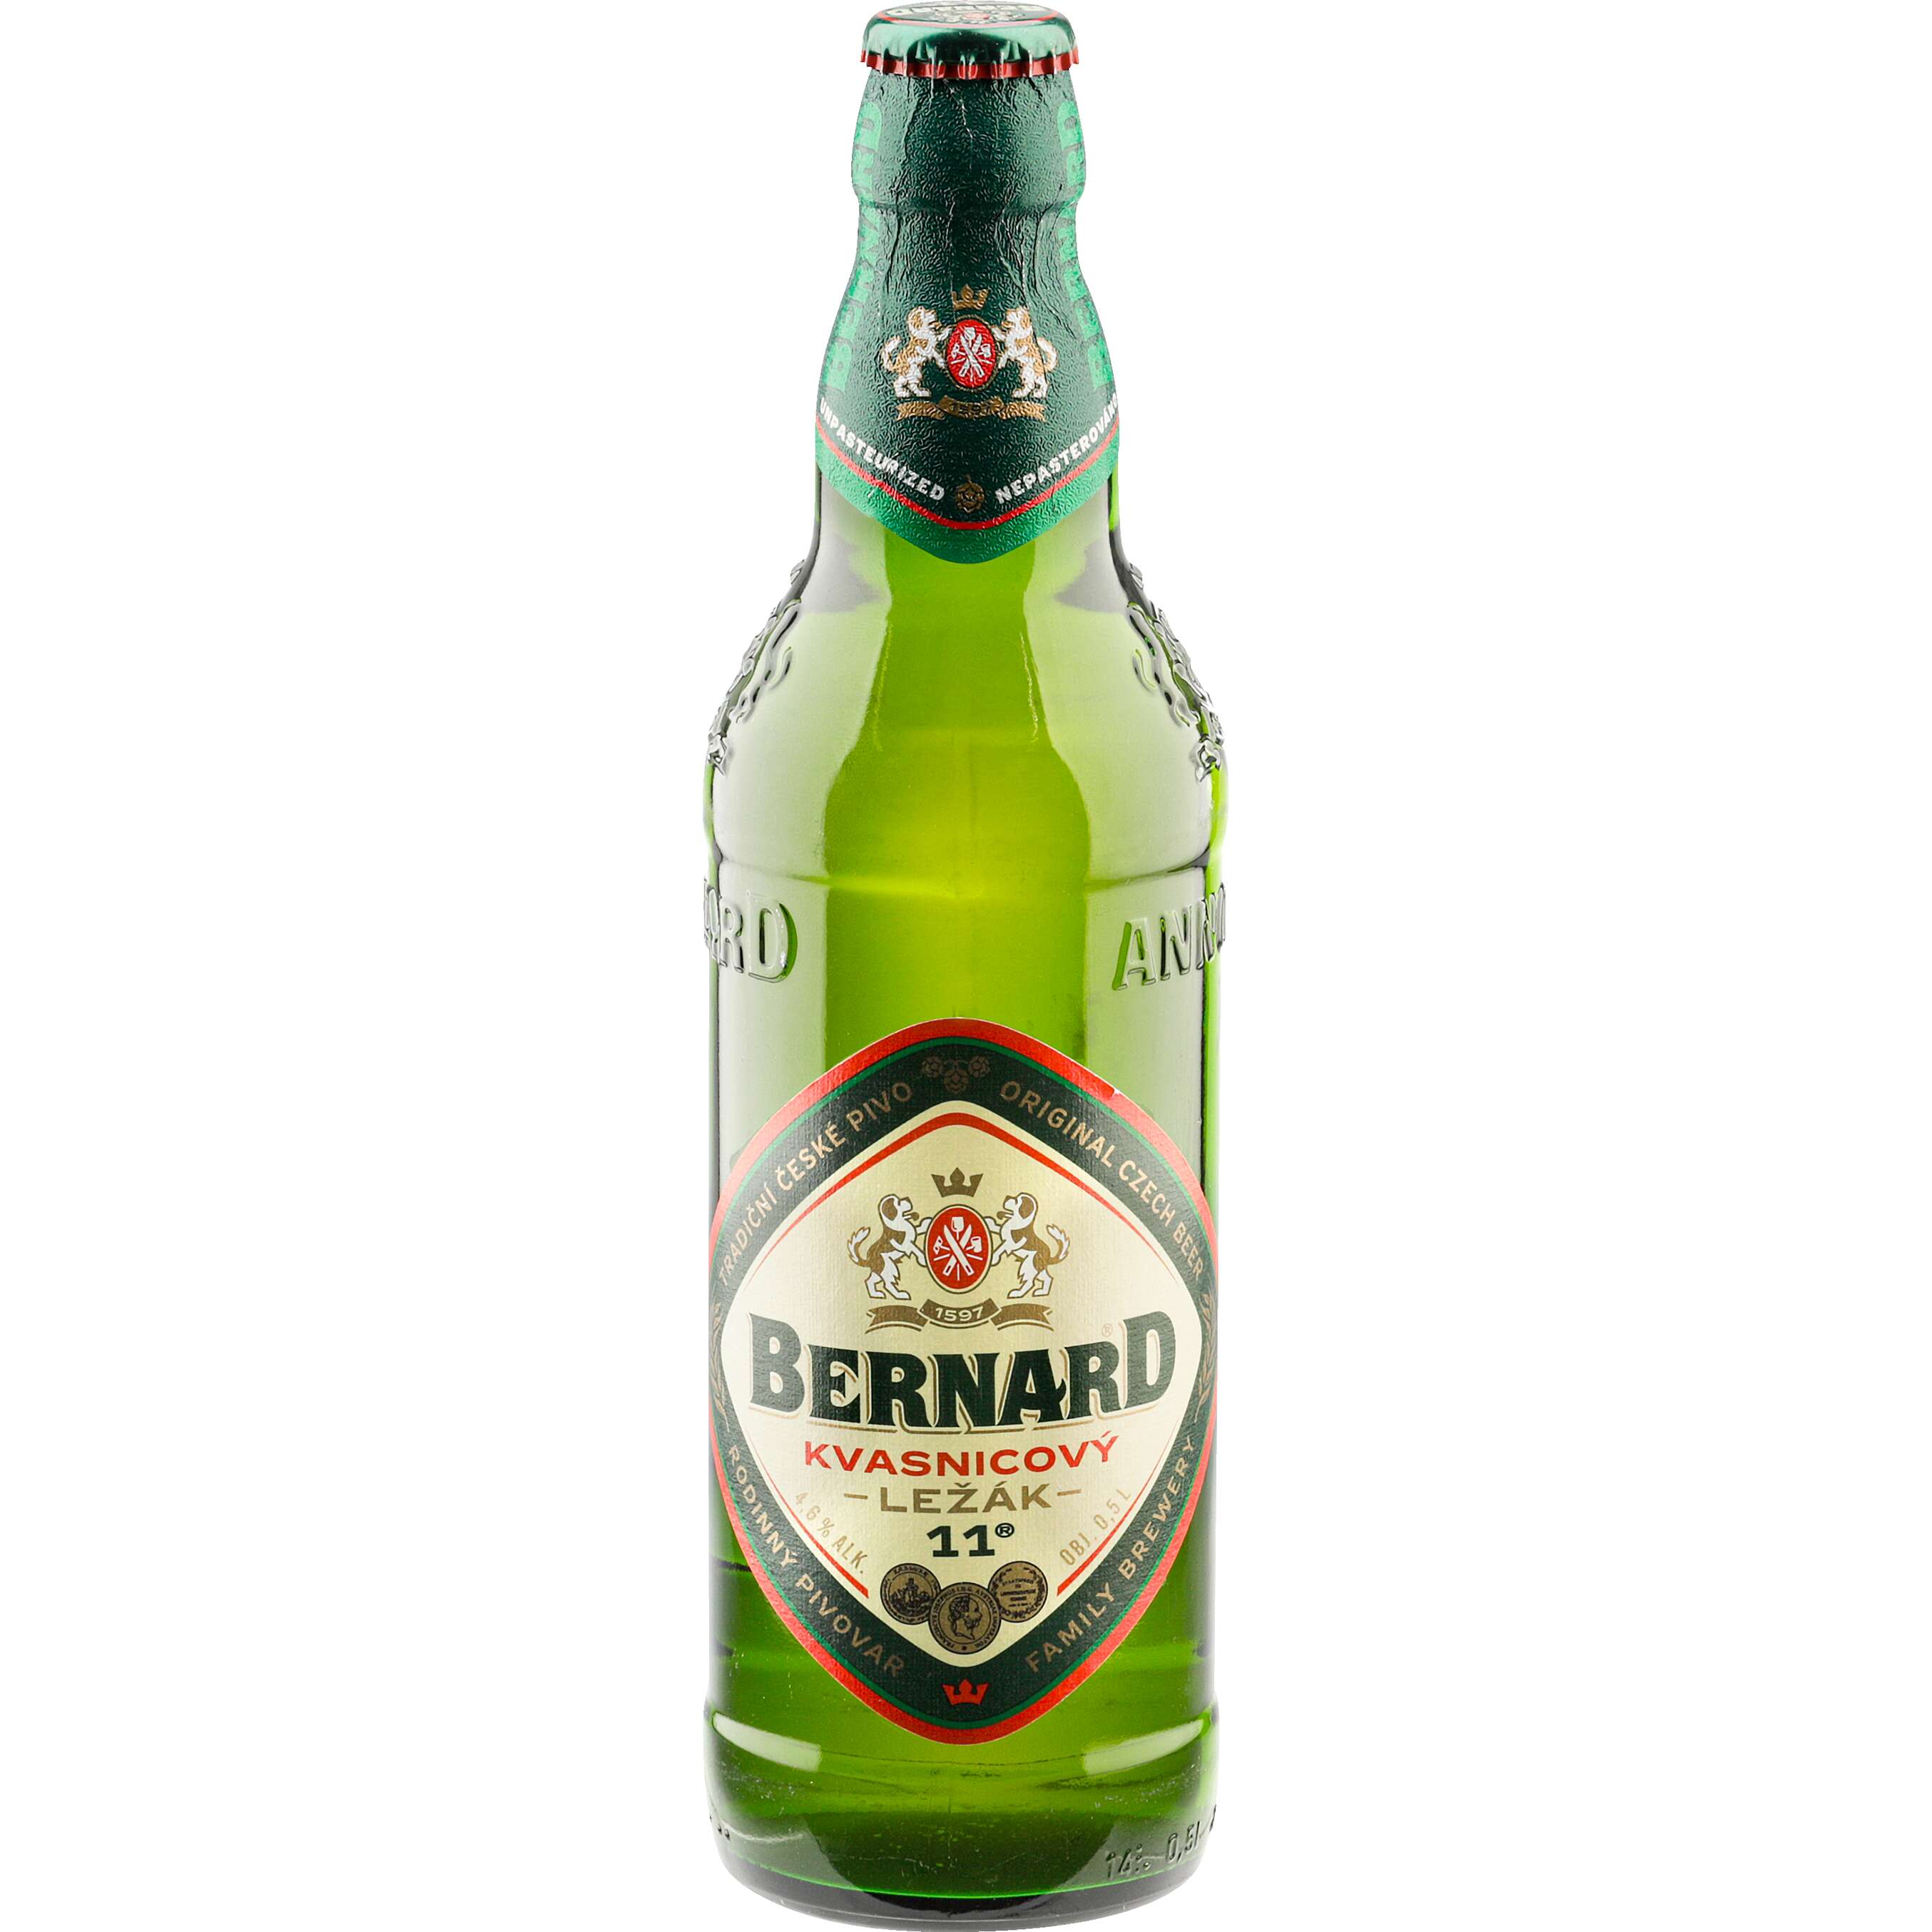 Zobrazit nabídku Bernard 11 Pivo kvasnicový světlý ležák